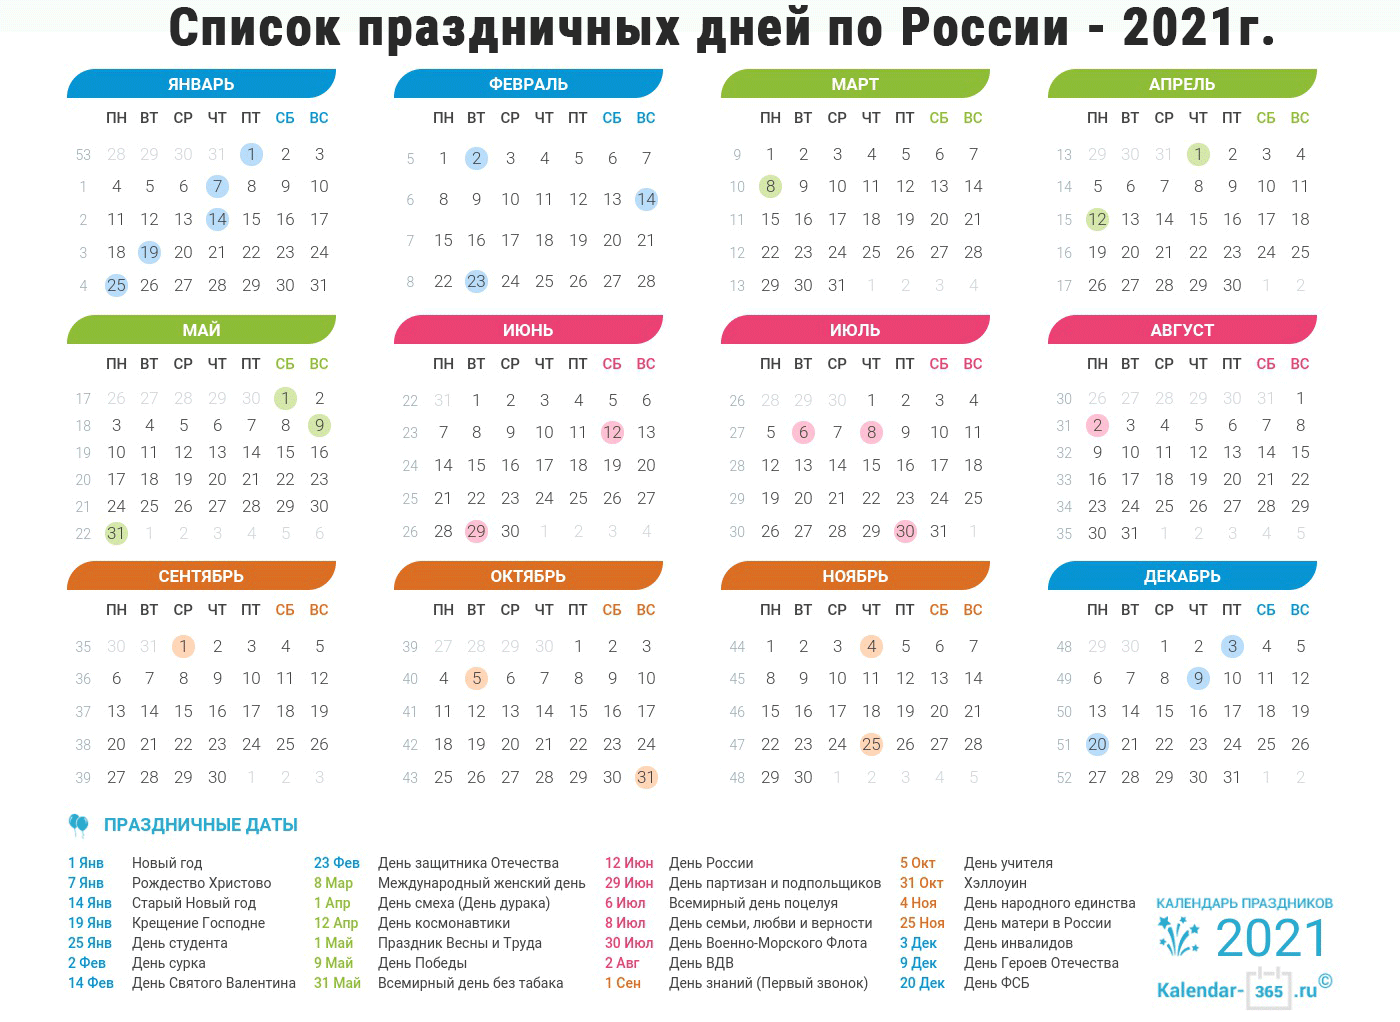 Список праздничных и рабочих дней по России на 2021 год